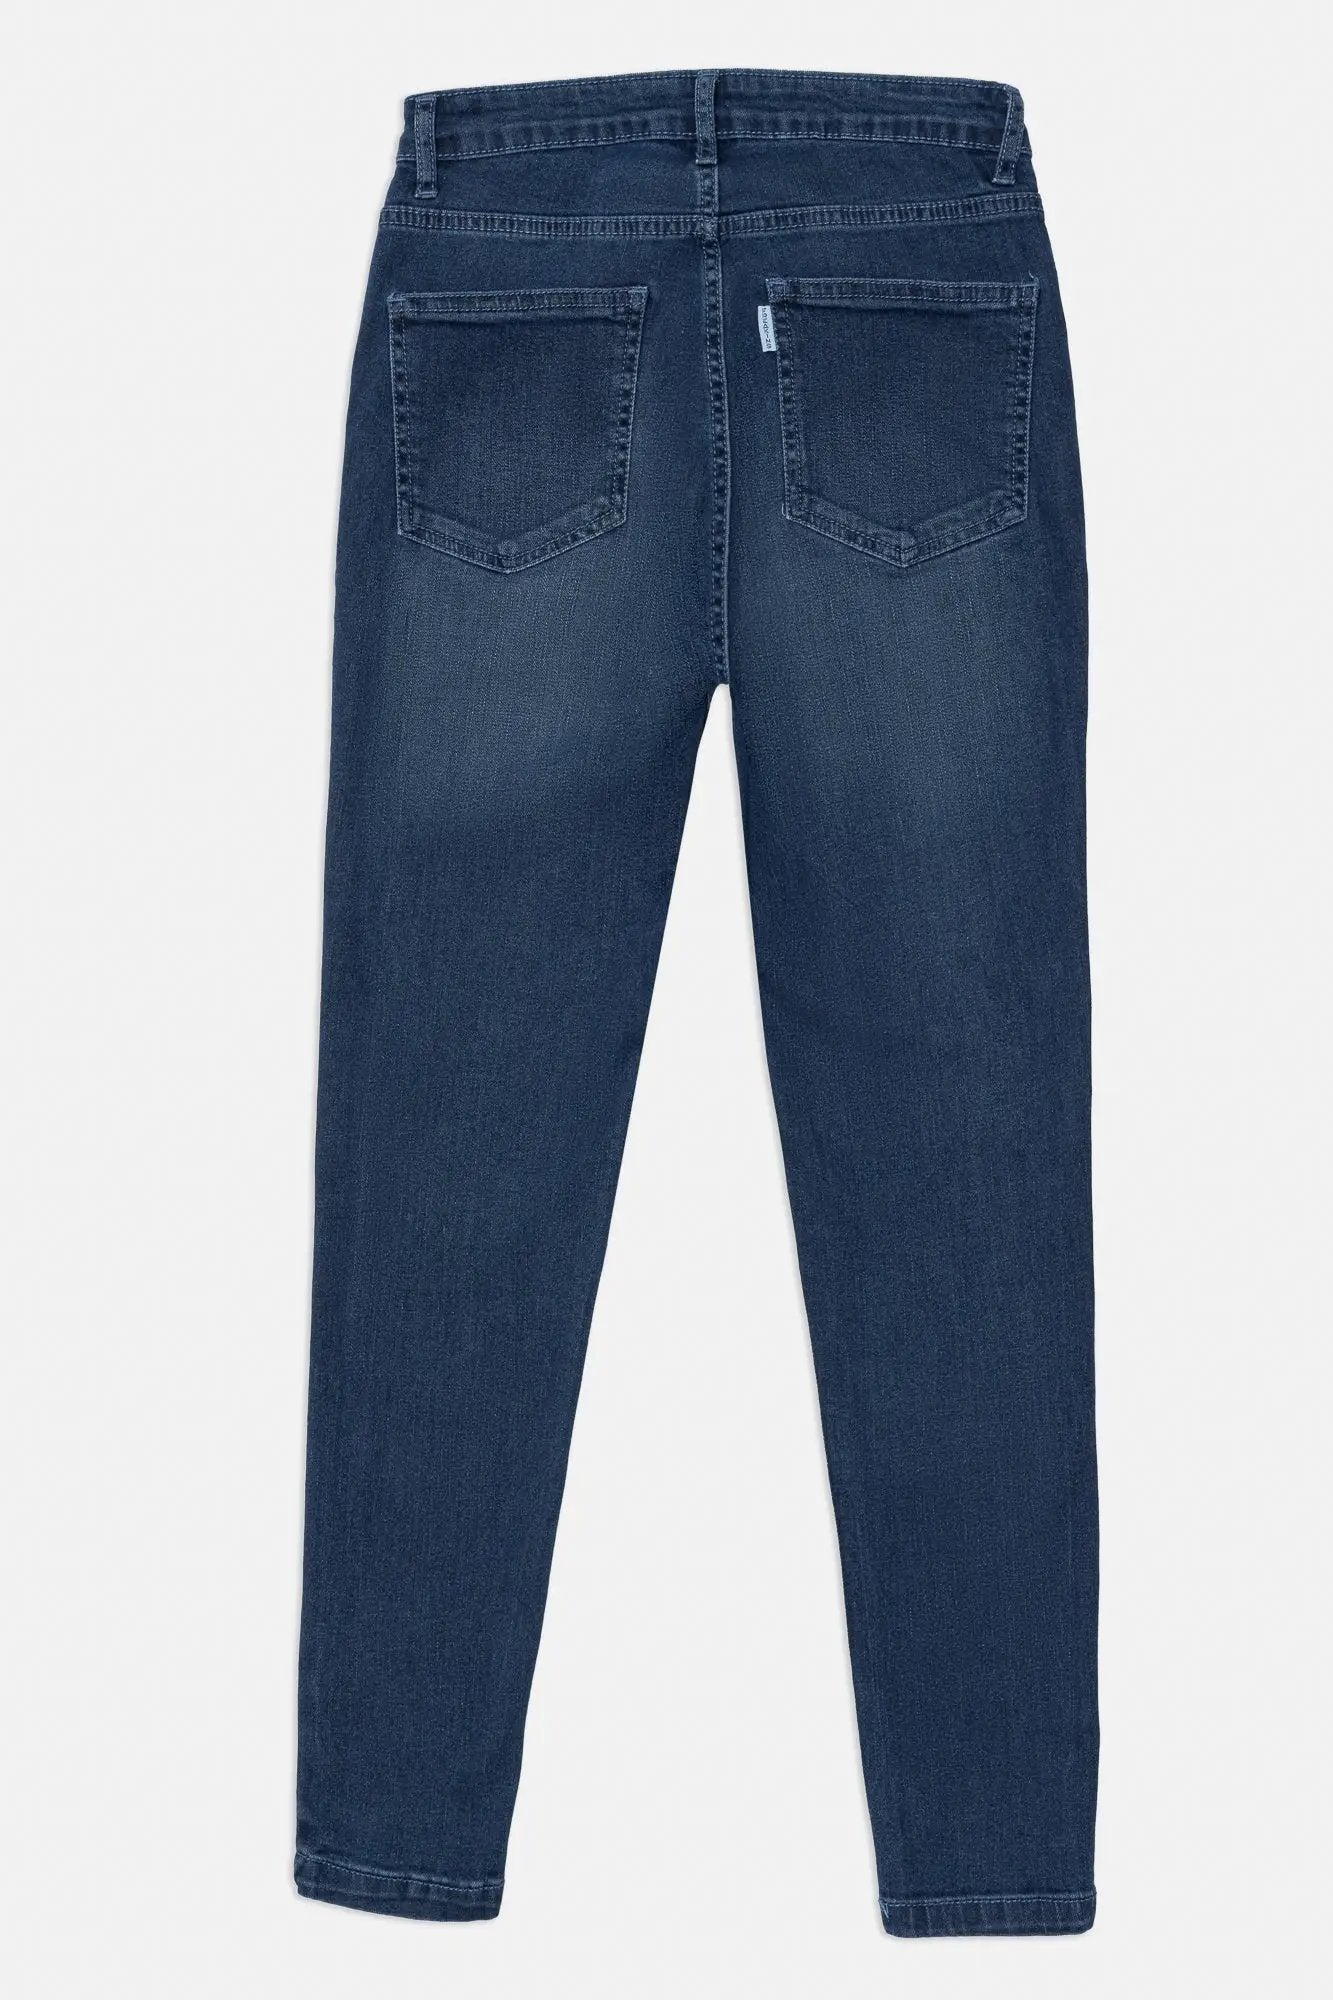 Buy Dark & Light Blue Jeans for Women Starting @ ₹790